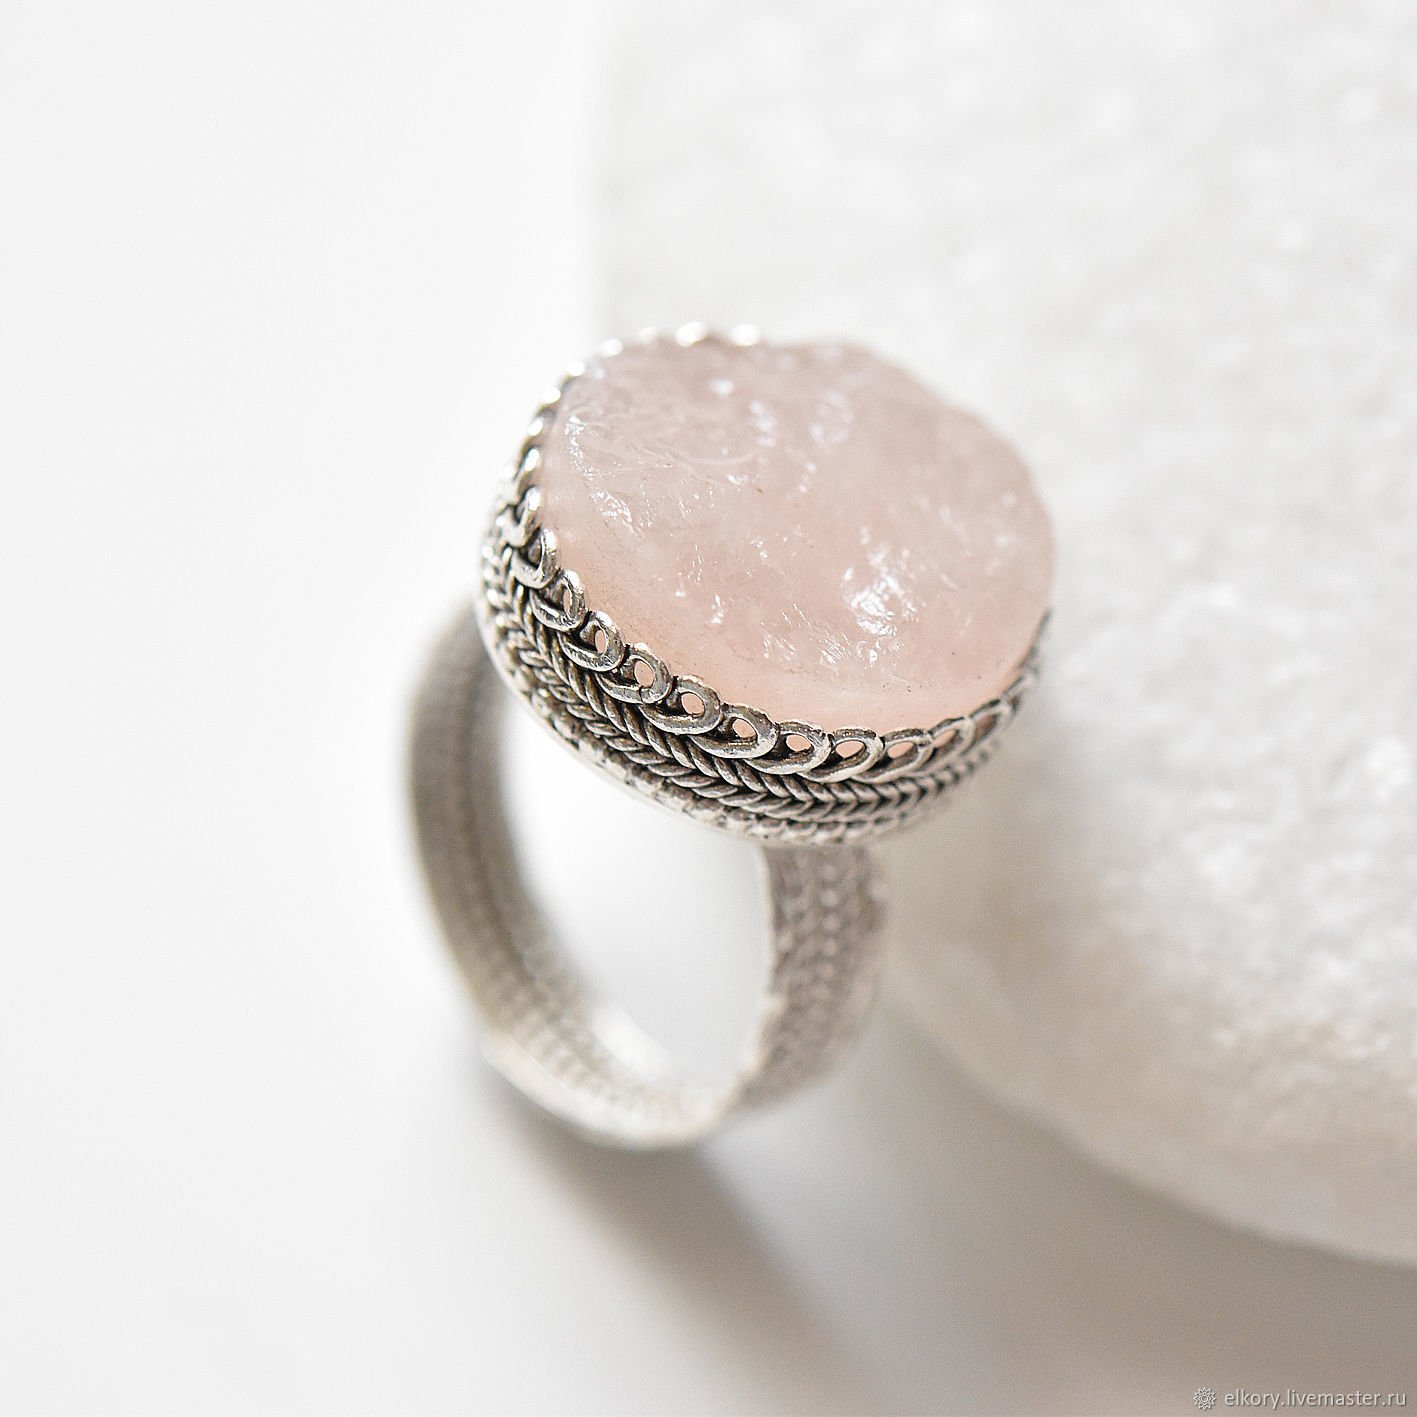 Кольцо серебро розовый. Кольцо с розовым кварцем silap 001. Ric281 кольцо кварц серебро. Кольцо л2013-1 серебро кварц. Кольцо серебряное 15038 с кварцем.